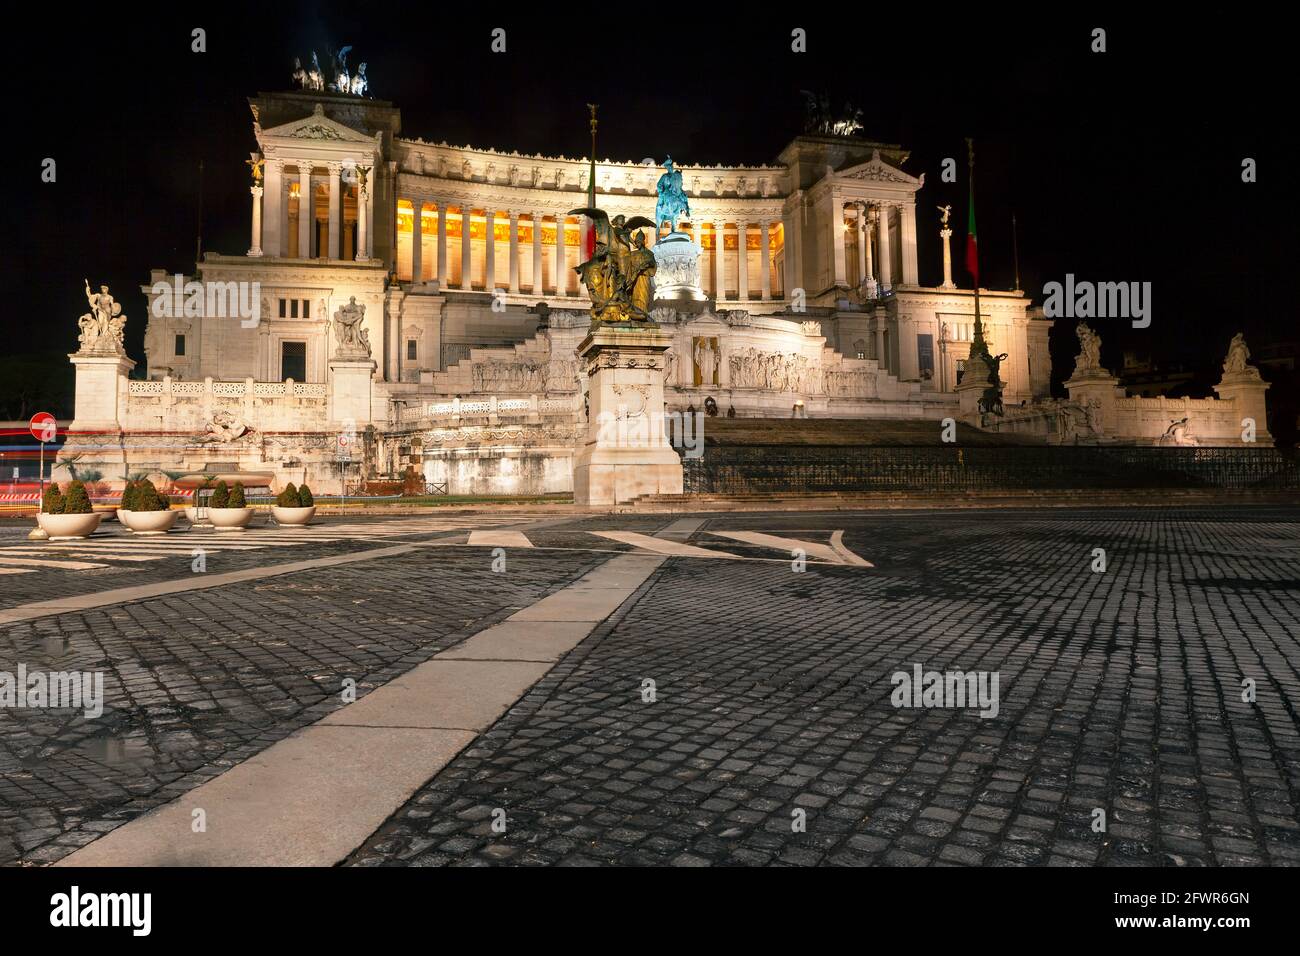 Altare della Patria - Opening hours, price and location - Rome